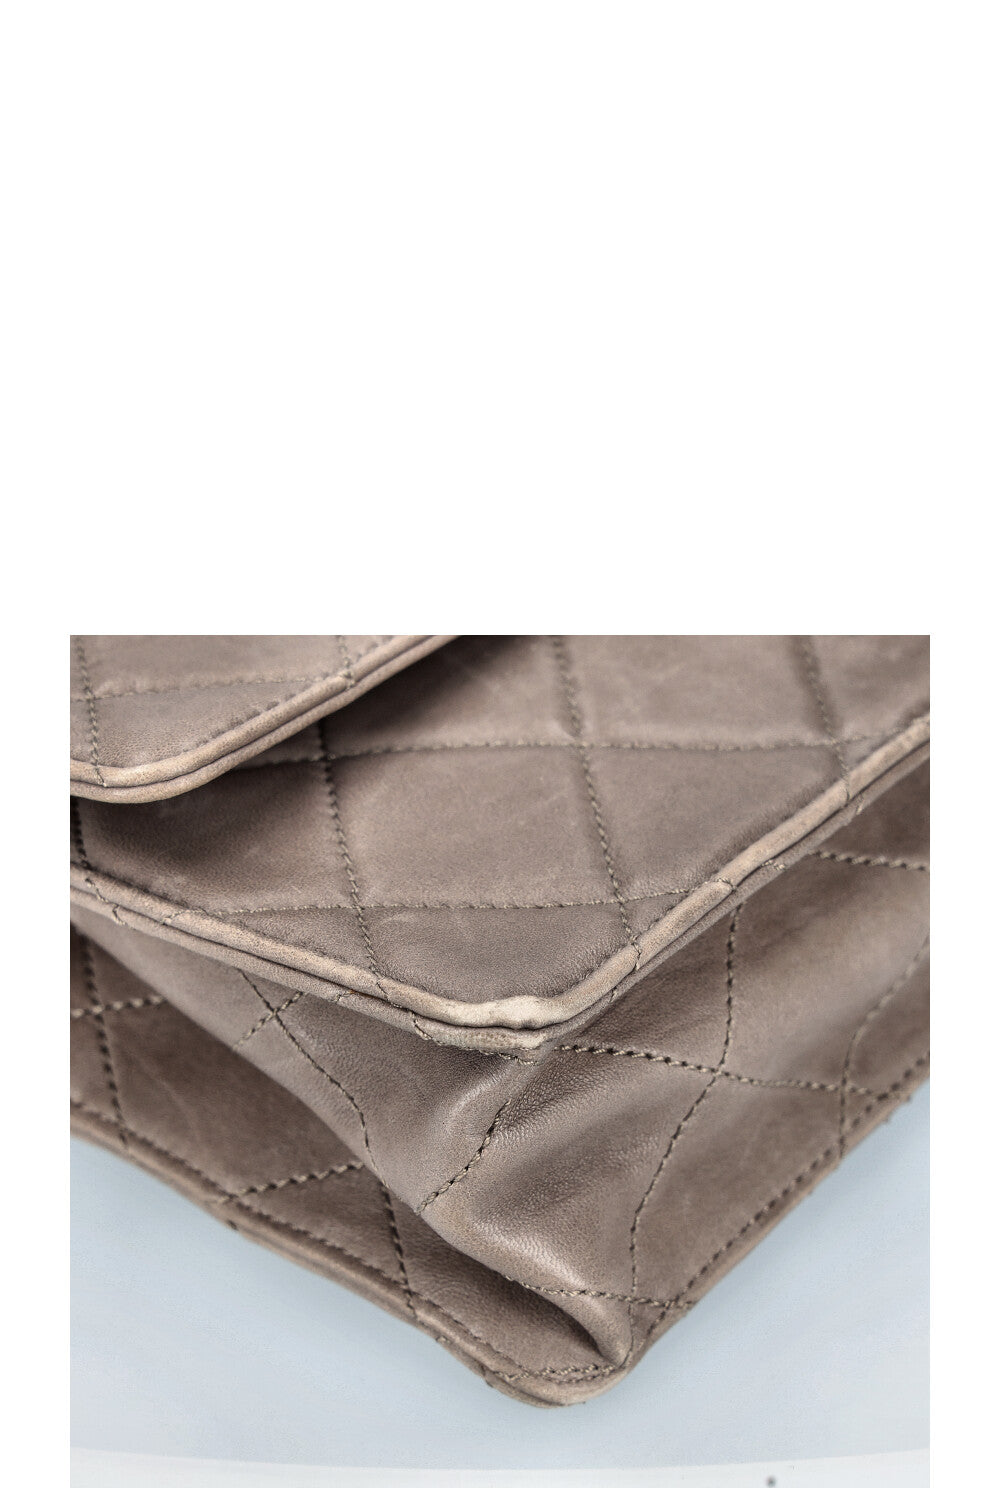 CHANEL 2.55 Handle Flap Bag